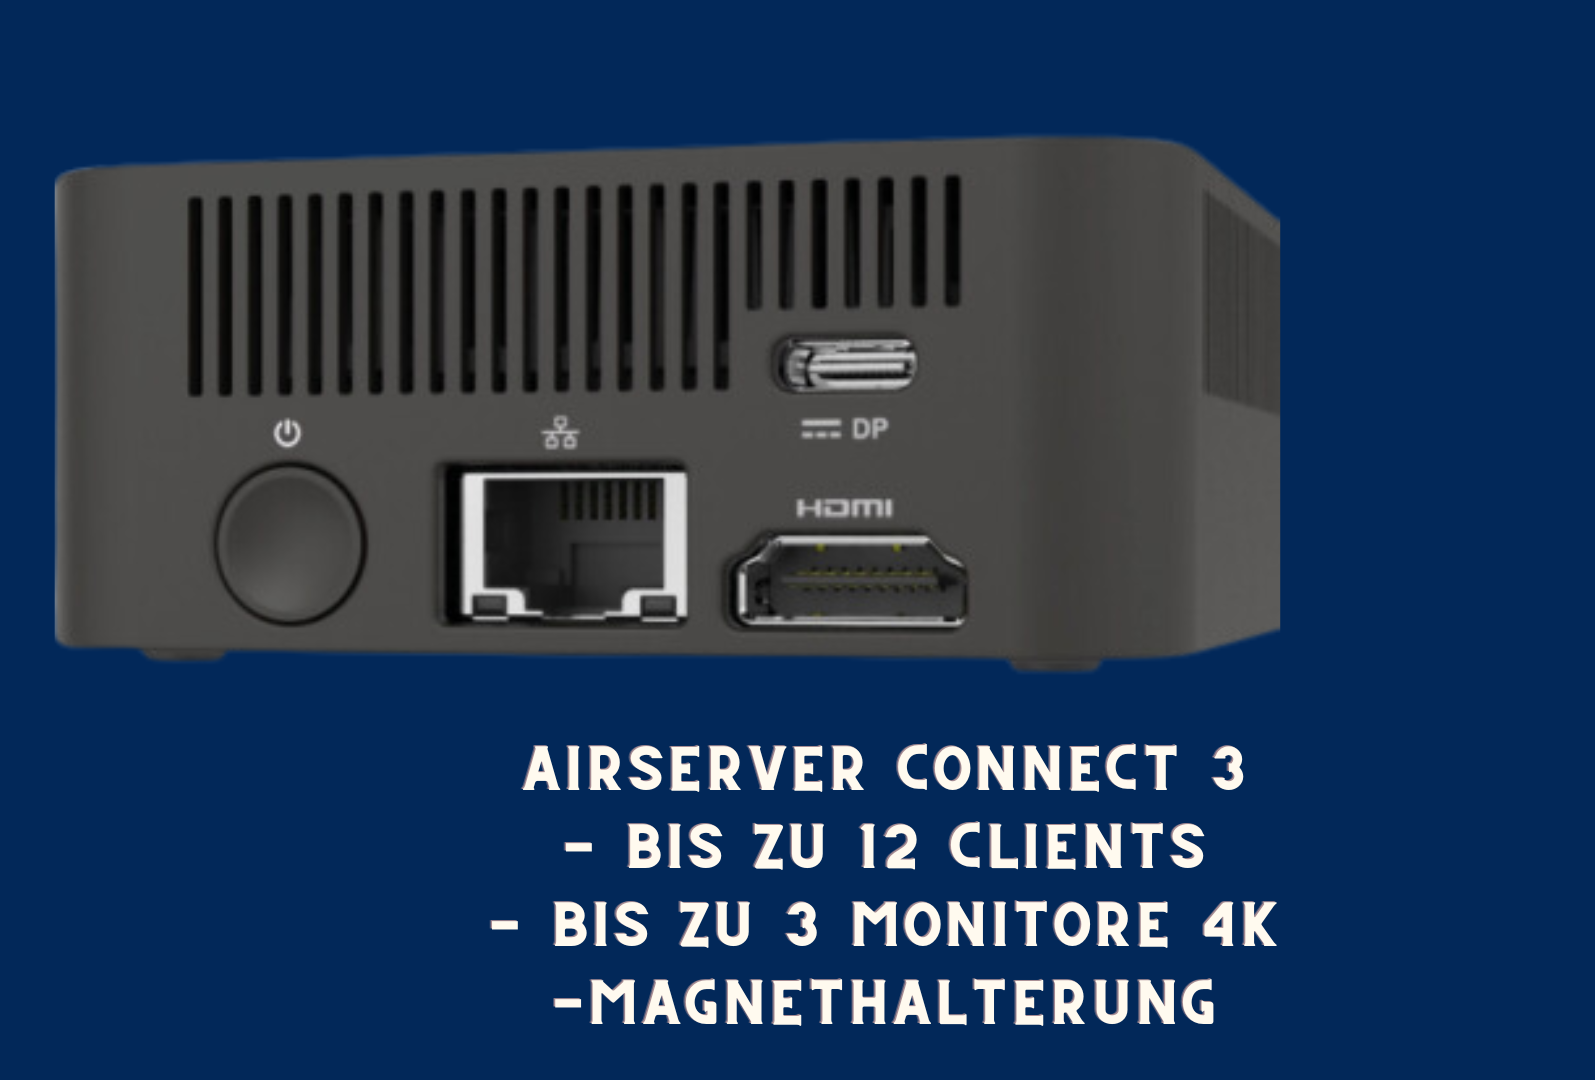 Airserver Connect 3 -Drahtlose Übertragung mit 4k UHD